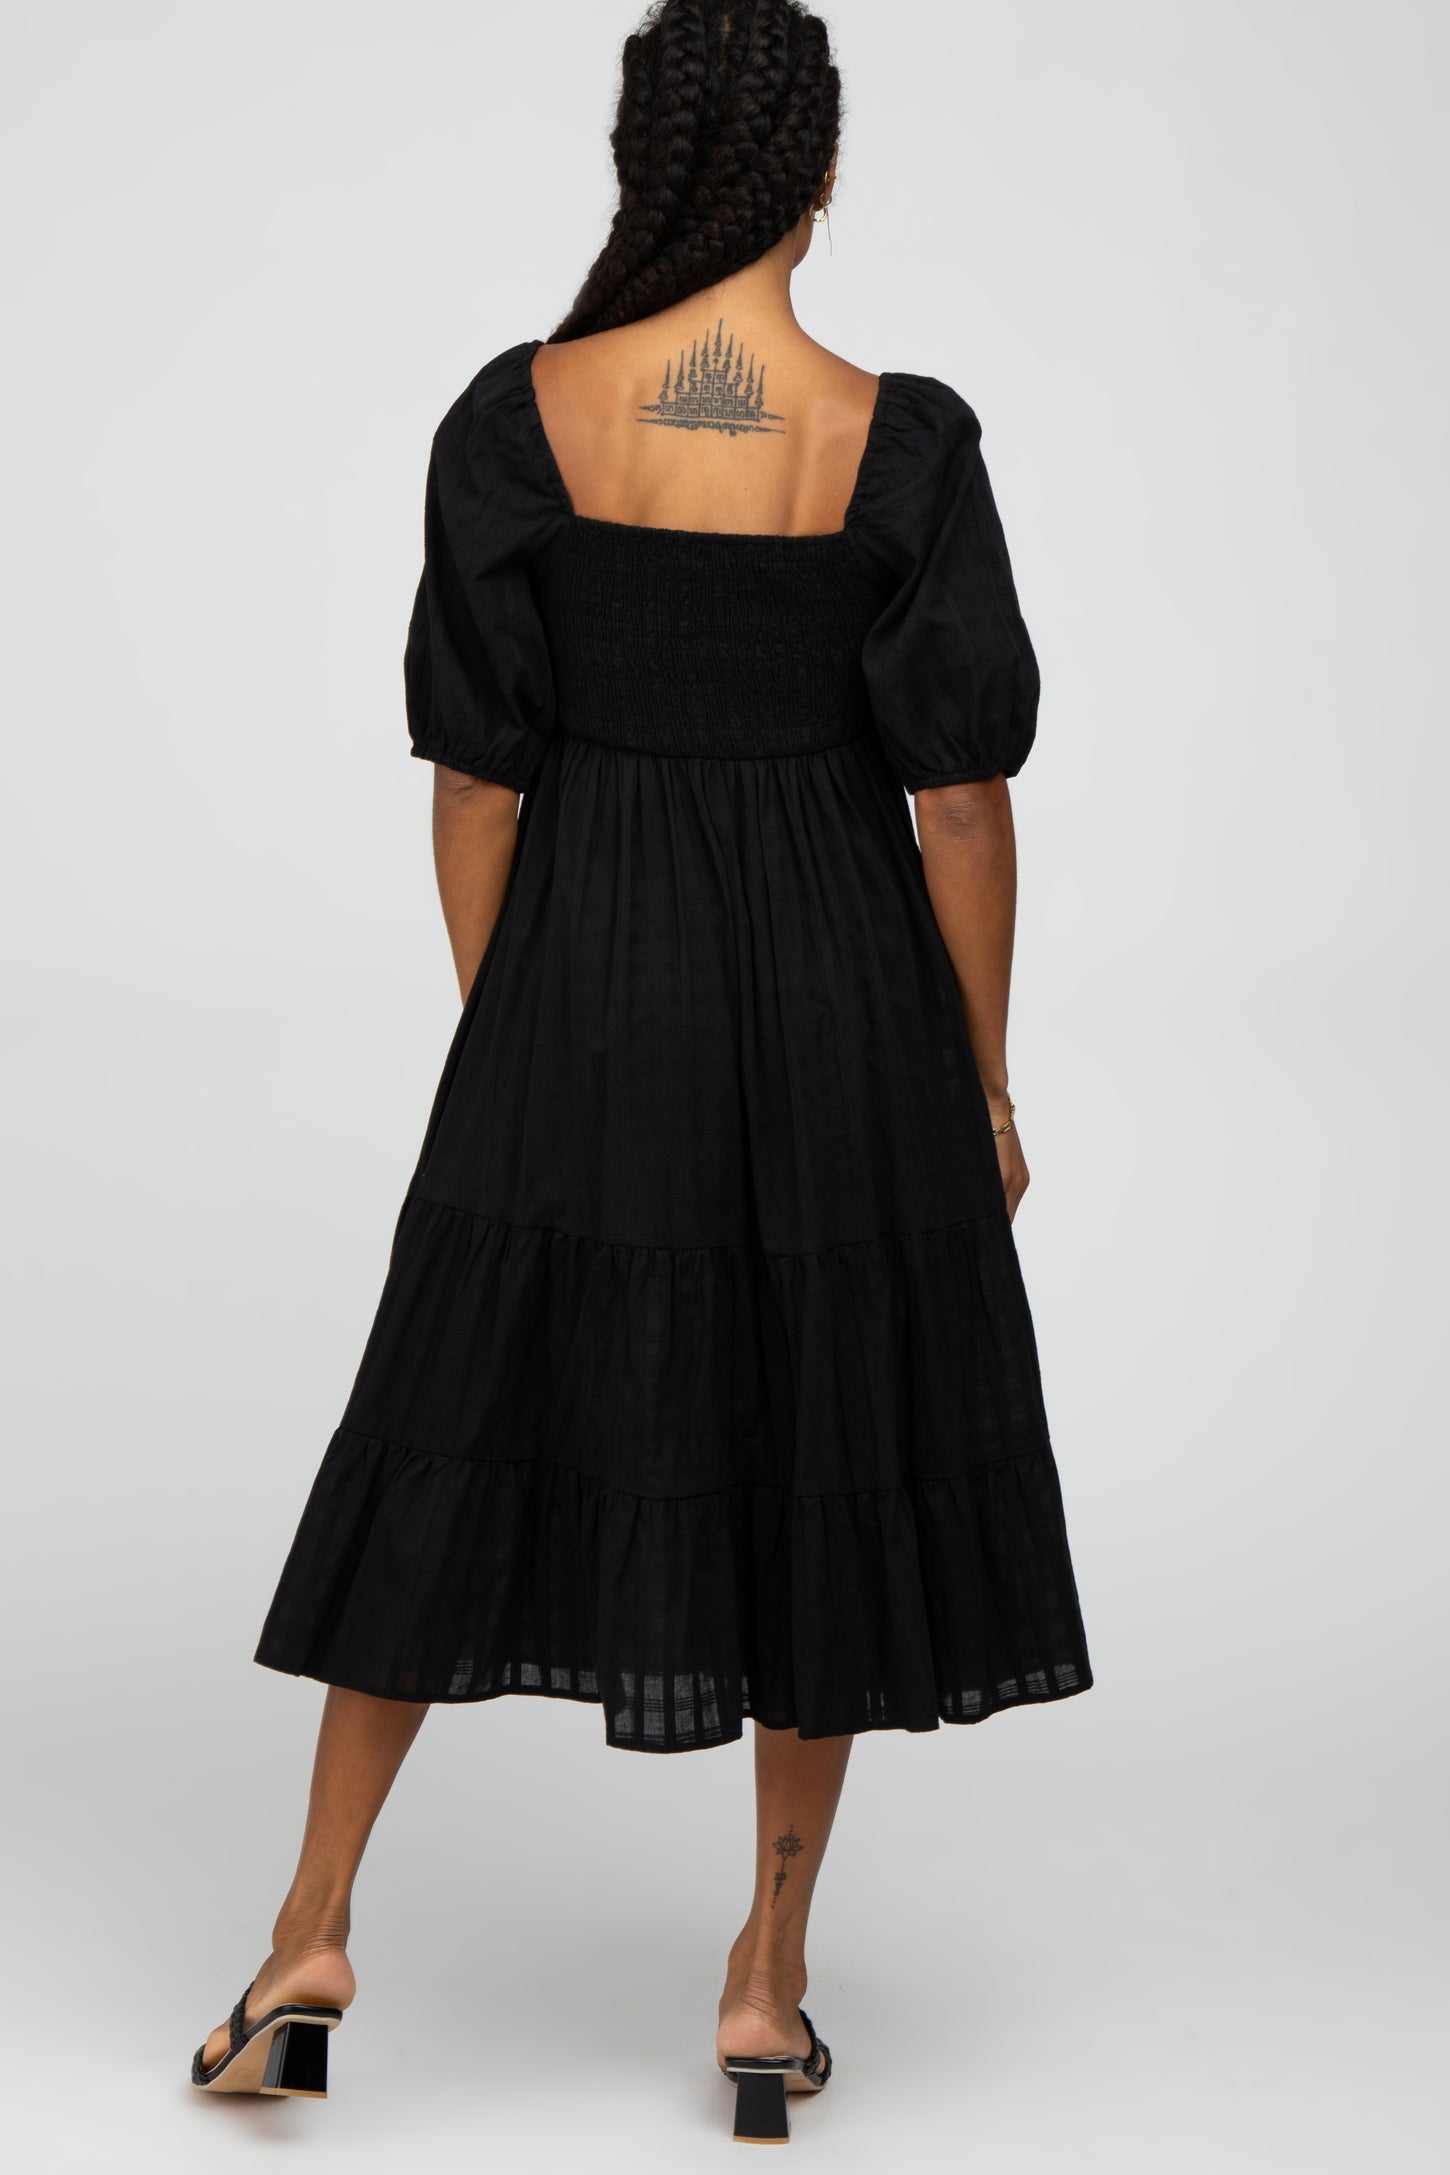 Black Plaid Square Neck Midi Dress– PinkBlush